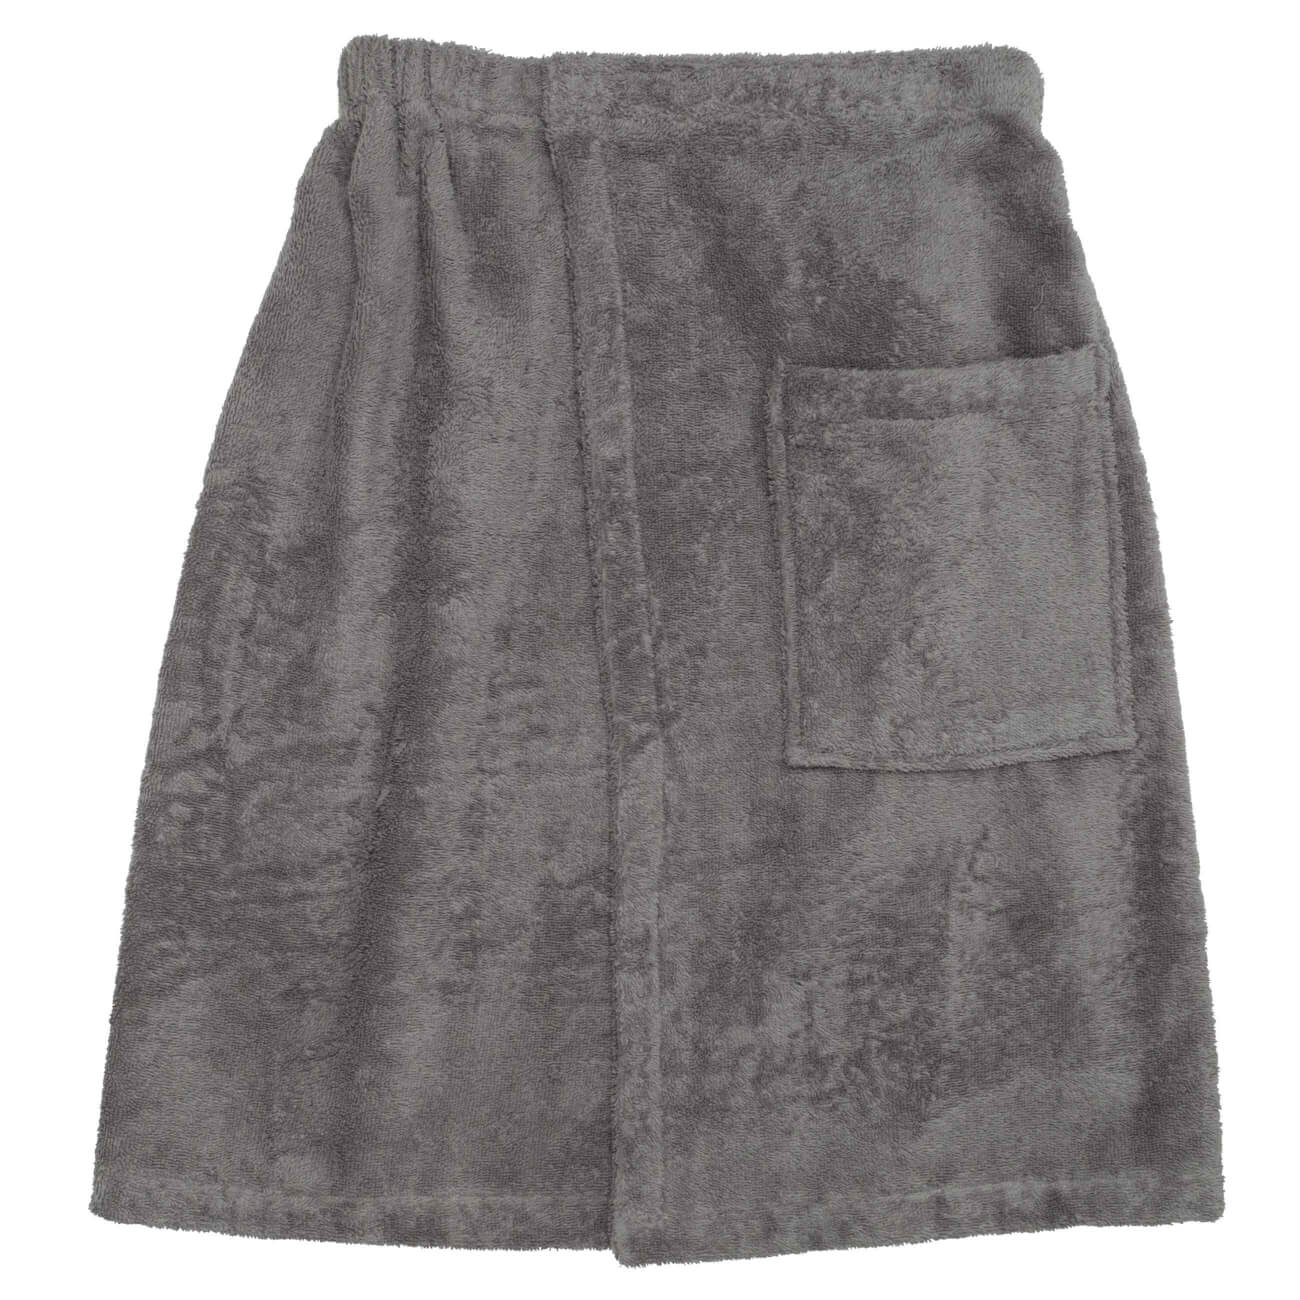 Полотенце-килт мужское, 70х160 см, на липучке, хлопок, темно-серое, Spa towel одеяло хлопок оригинал р 140х205